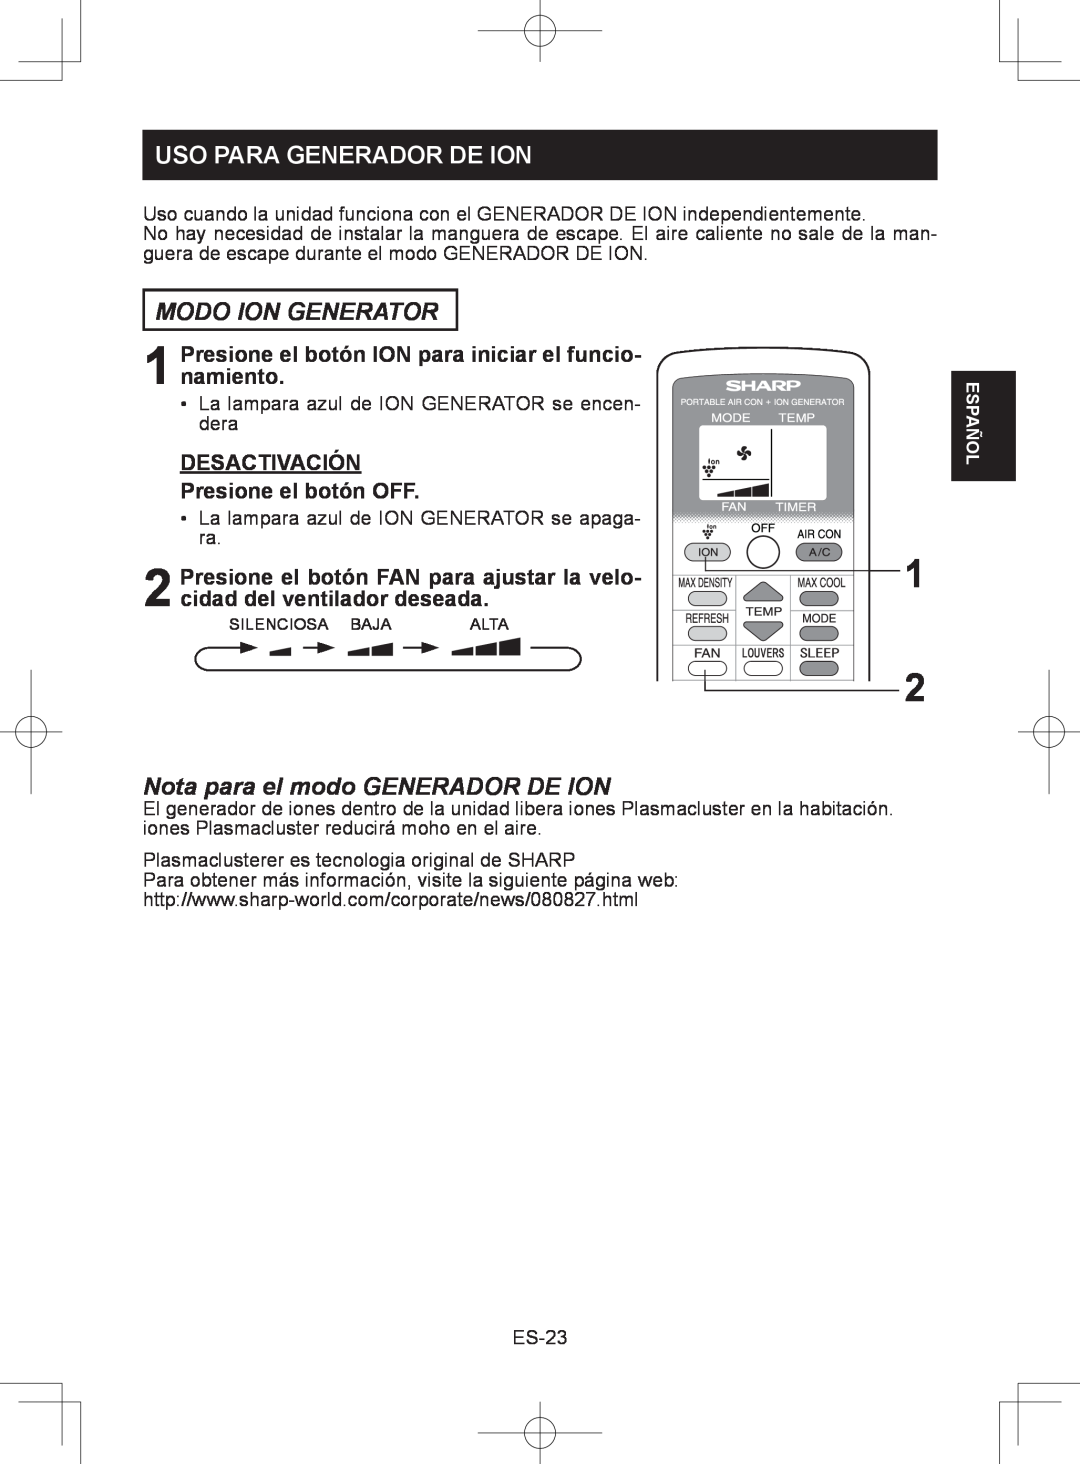 Sharp CV-2P10SC operation manual Uso Para Generador De Ion, Modo Ion Generator, Nota para el modo GENERADOR DE ION 